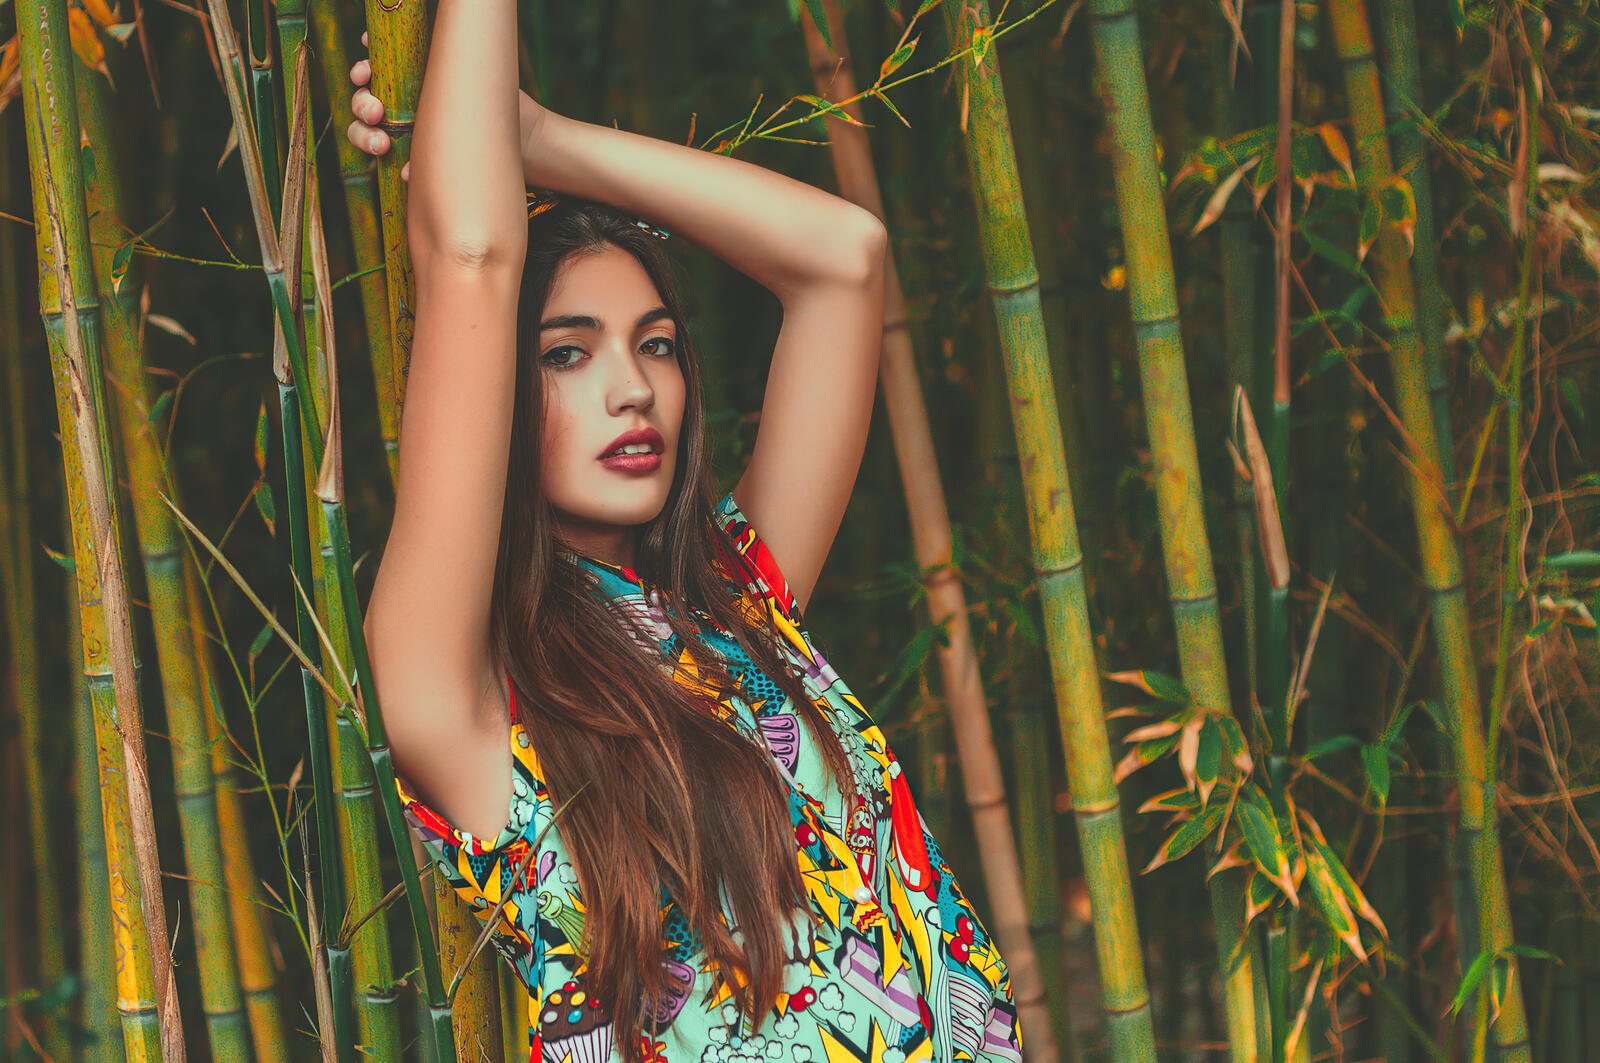 Бесплатное фото Паула риба позирует в цветном платье на фоне бамбука